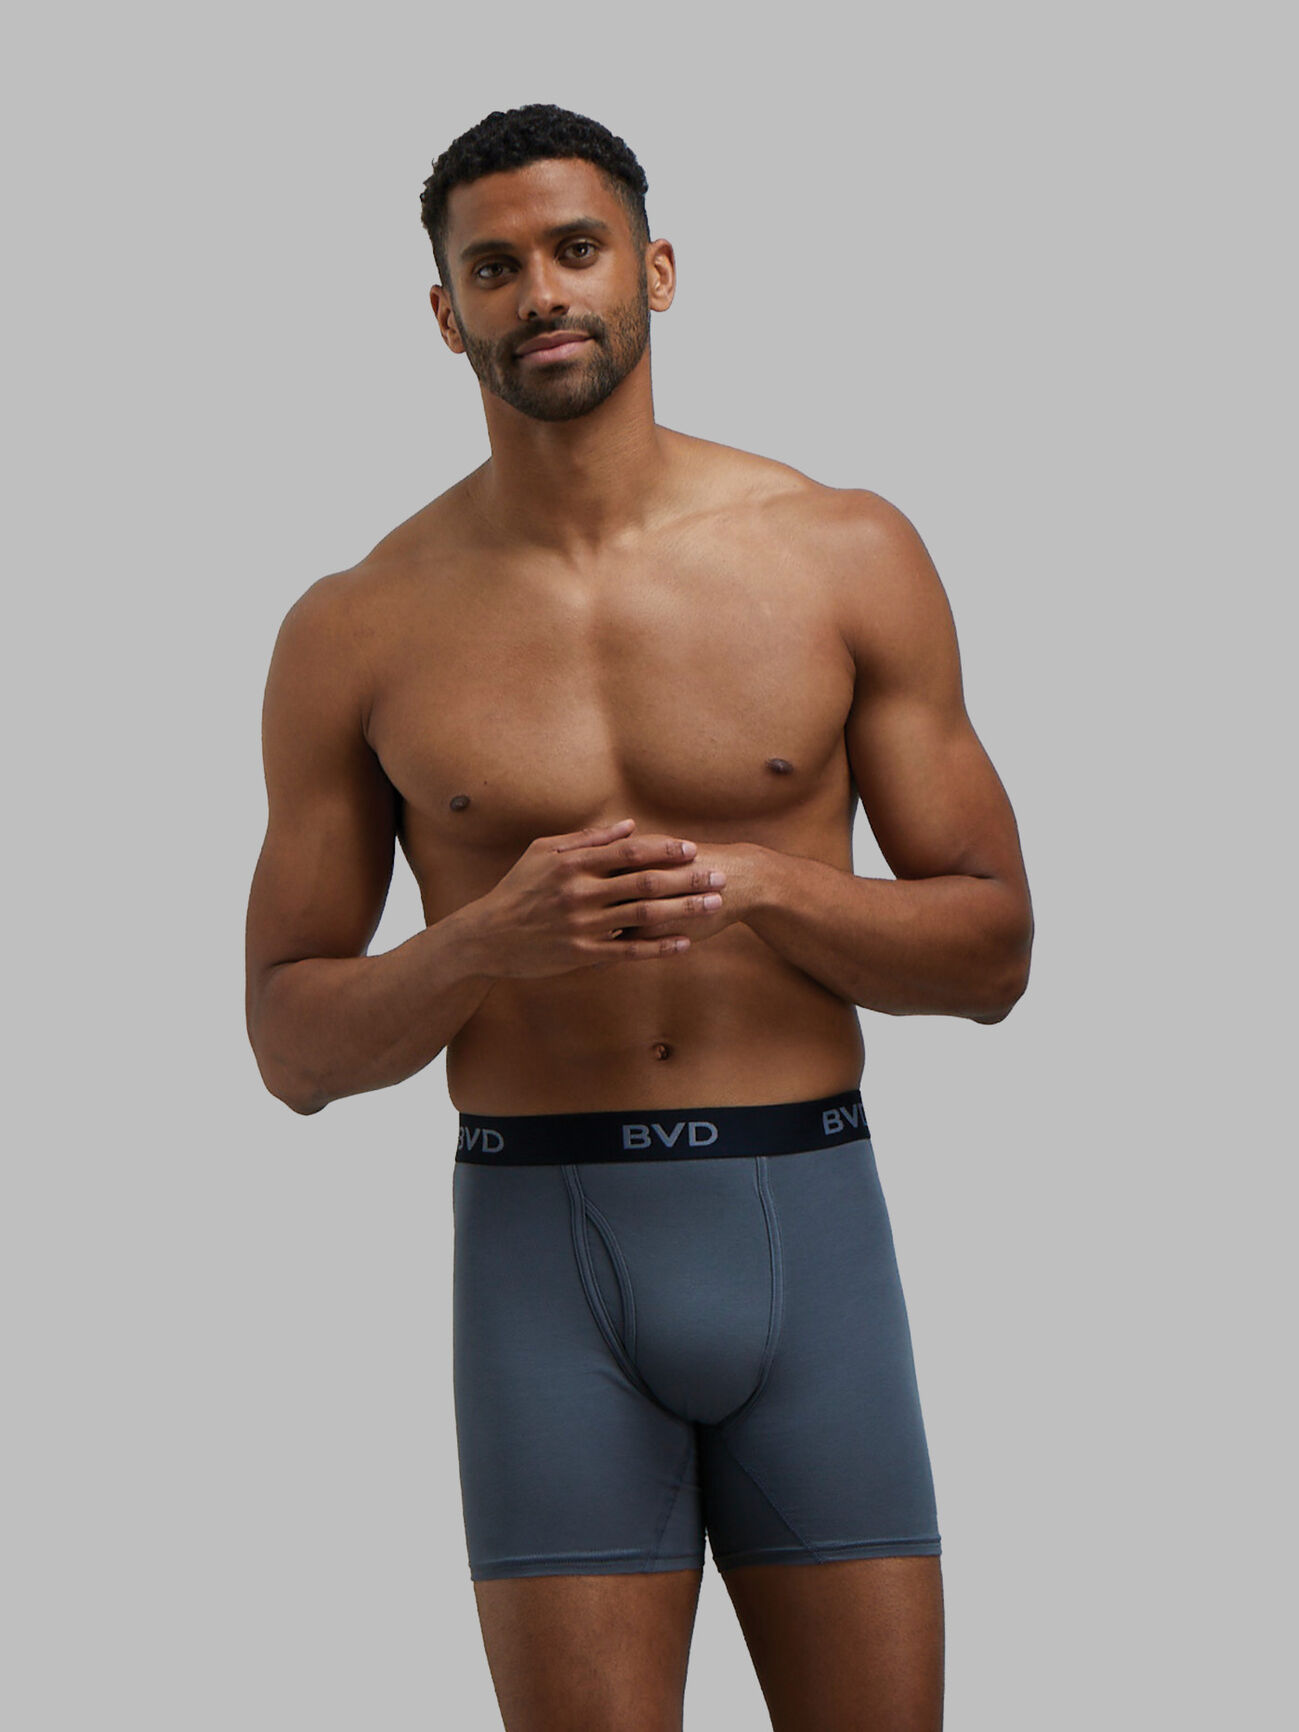 Calvin Klein Men's Underwear 3 Pack Cotton Stretch Boxer Briefs